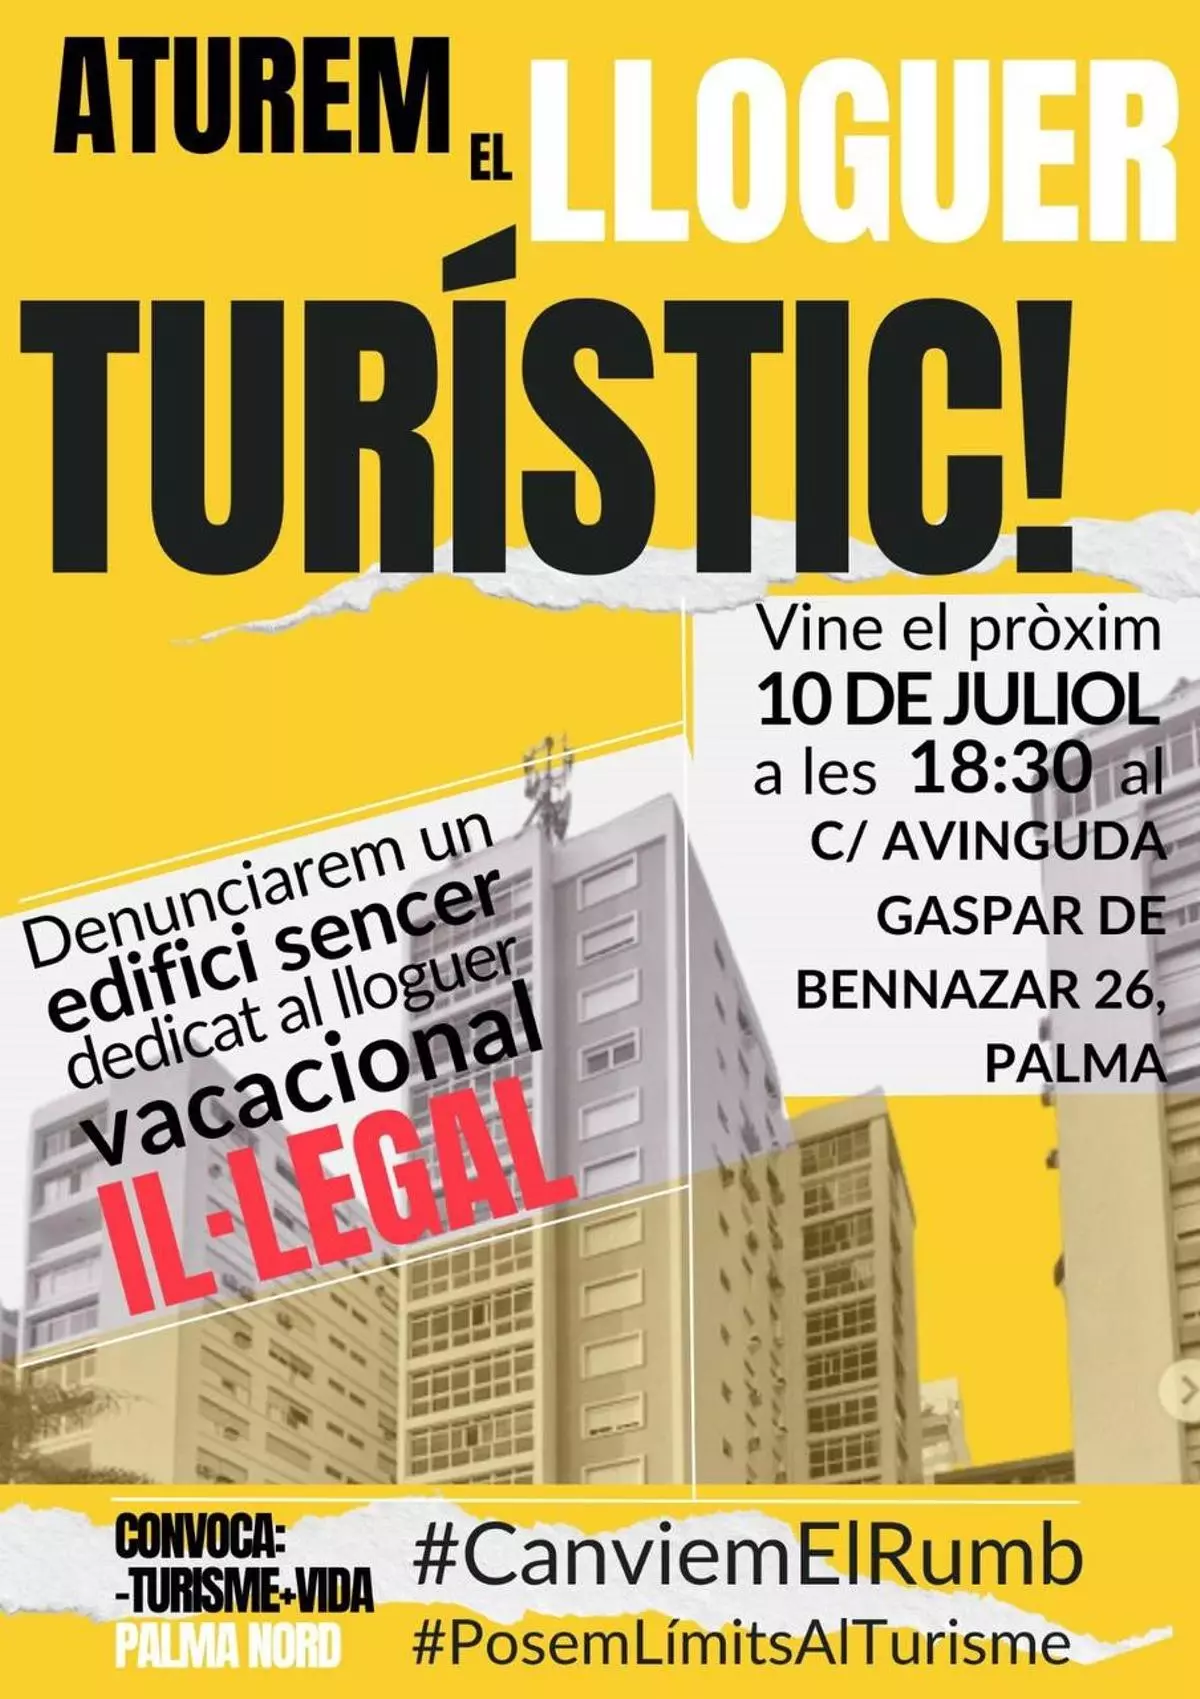 Menys turisme, més vida convoca una protesta frente a un edificio dedicado al alquiler turístico ilegal en Palma